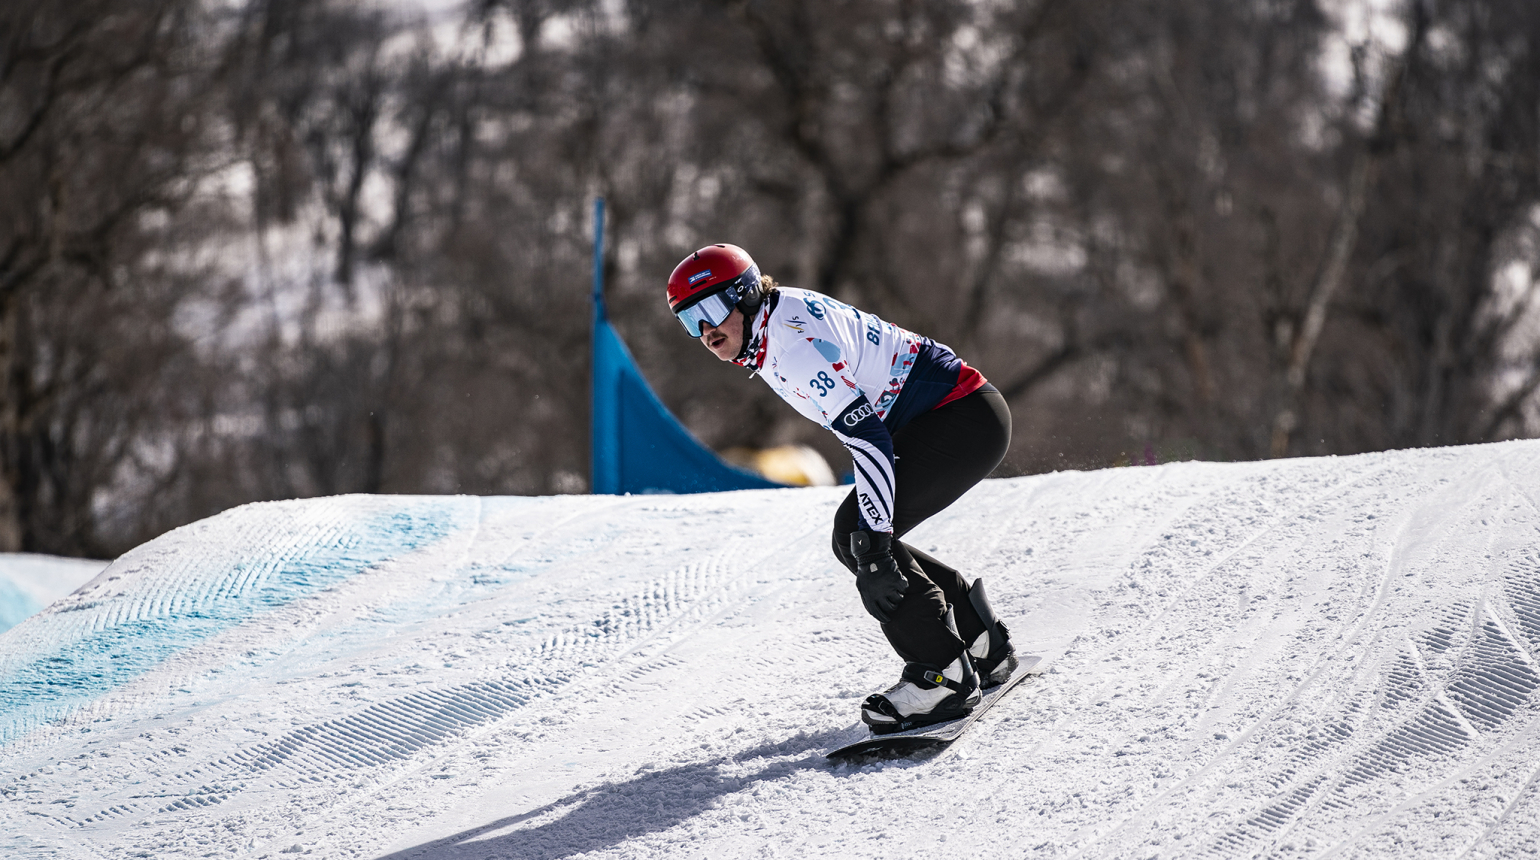 Povedená kvalifikace českých snowboardcrossařů! Do zítřejšího závodu postoupila hned z první jízdy čtveřice závodníků